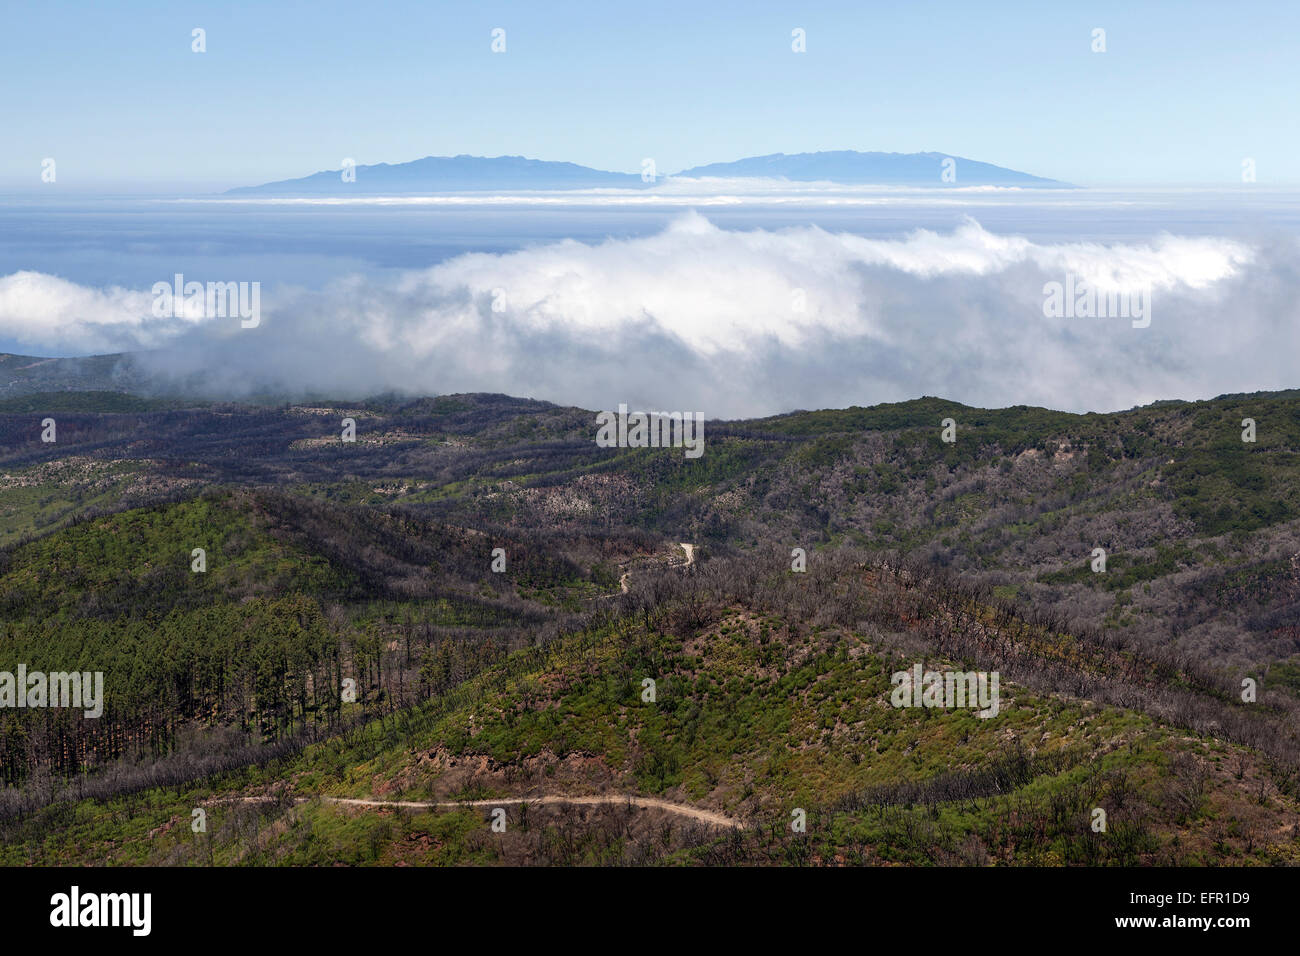 Blick vom Gipfel des Garajonay auf verkohlte Sträucher und Bäume, Spuren des Waldbrandes vom 2012, am Horizont die Insel Stockfoto